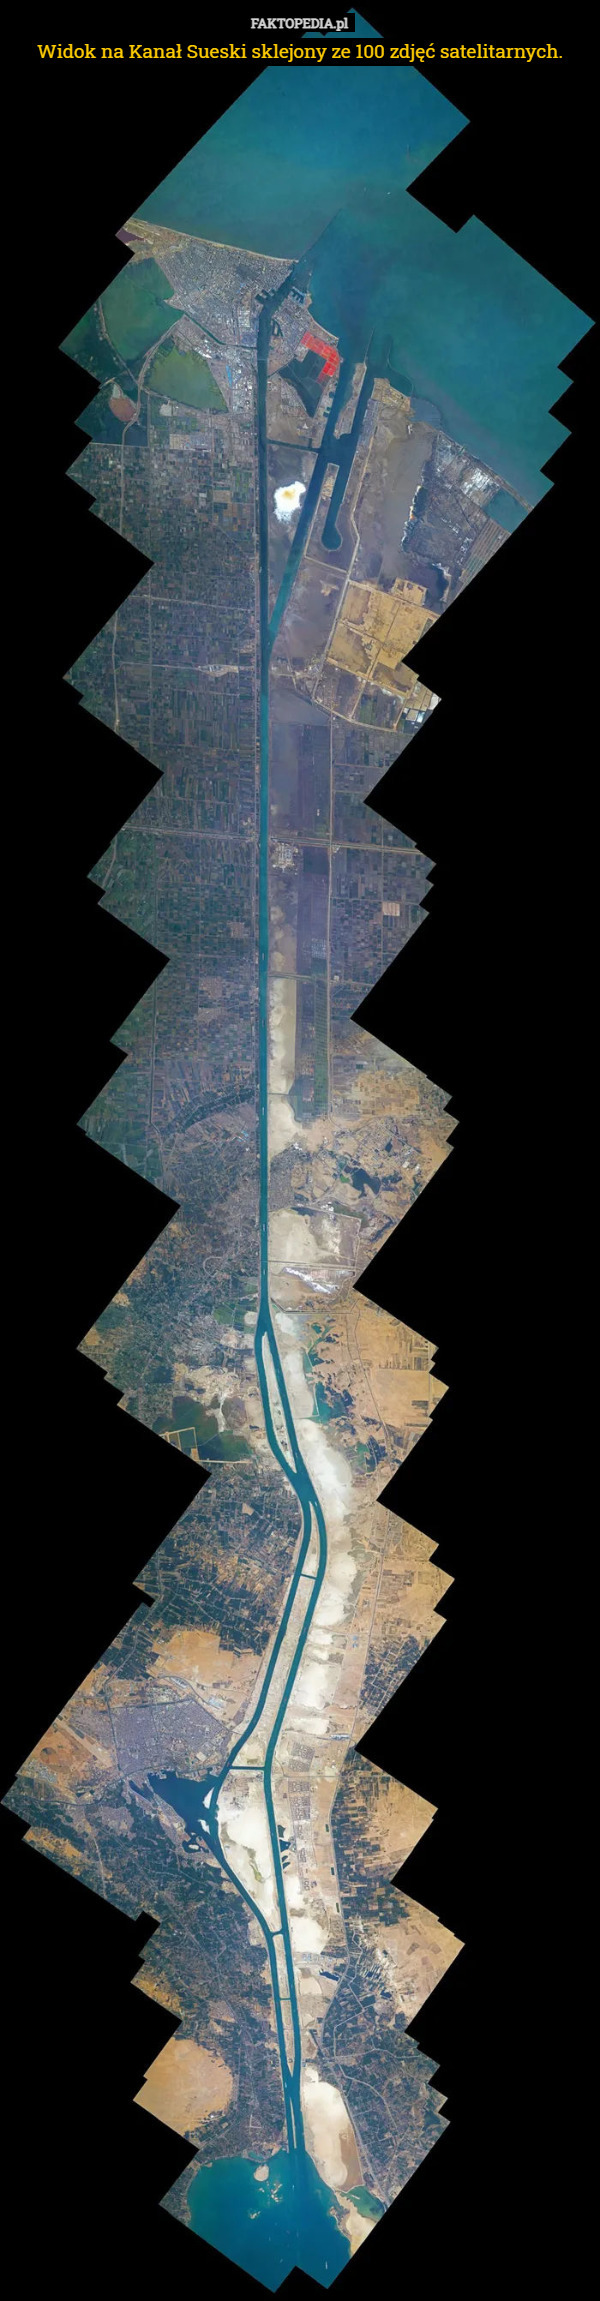 Widok na Kanał Sueski sklejony ze 100 zdjęć satelitarnych. 